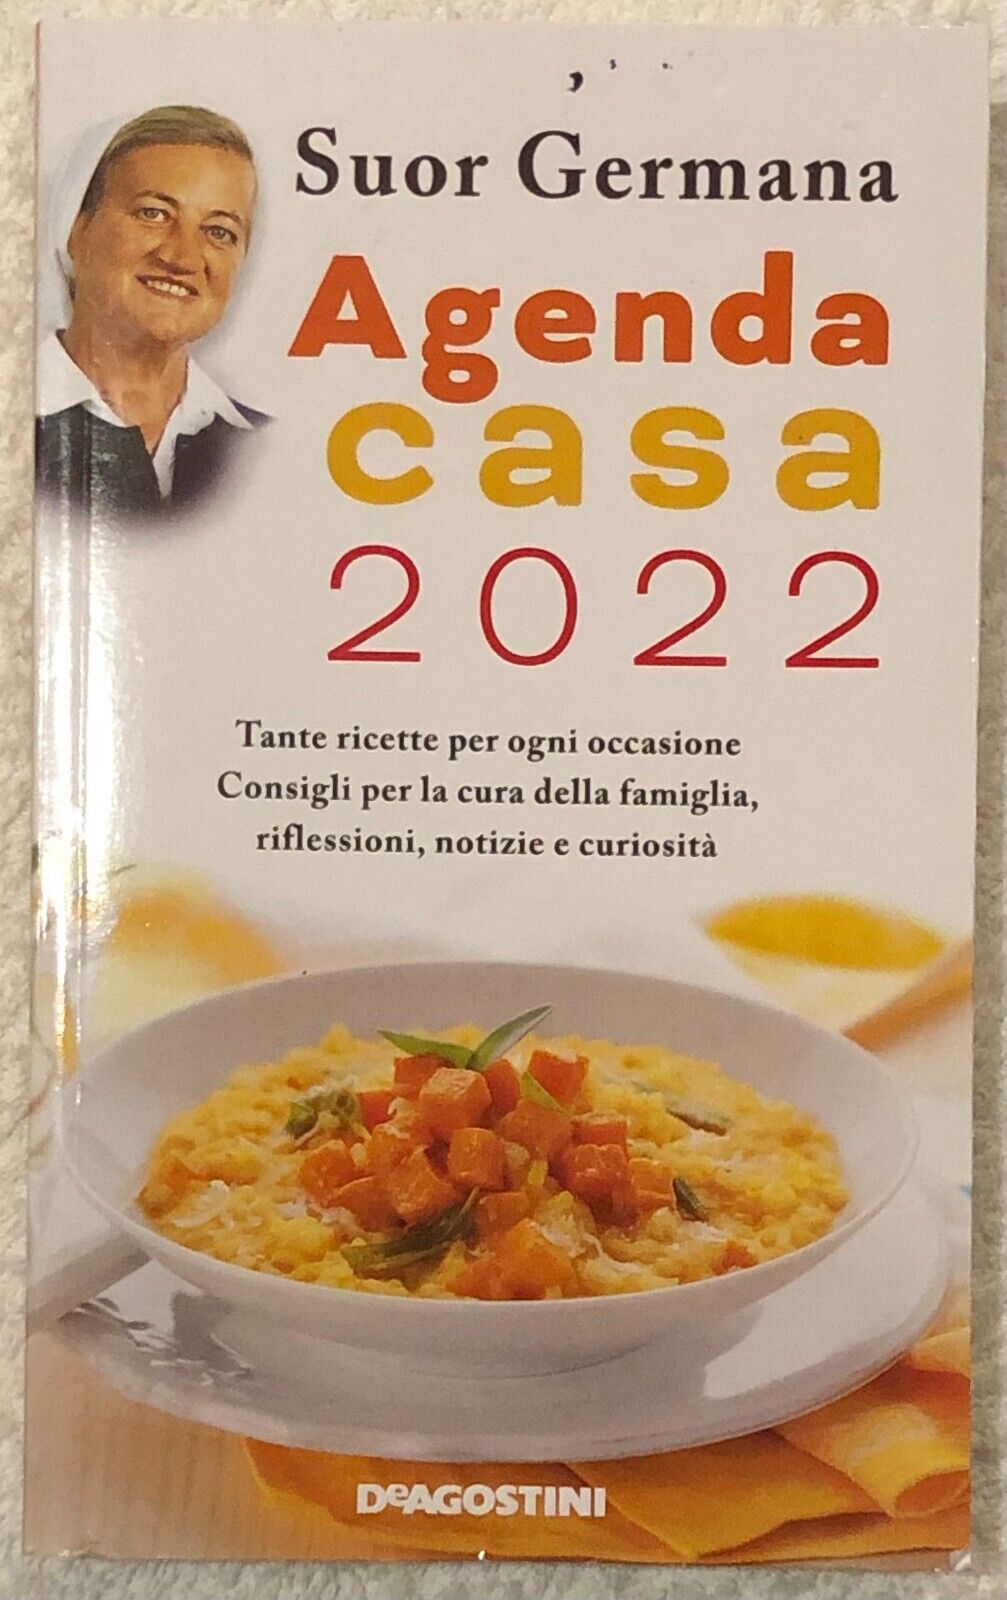 Agenda casa 2022 di Suor Germana,  2022,  Deagostini